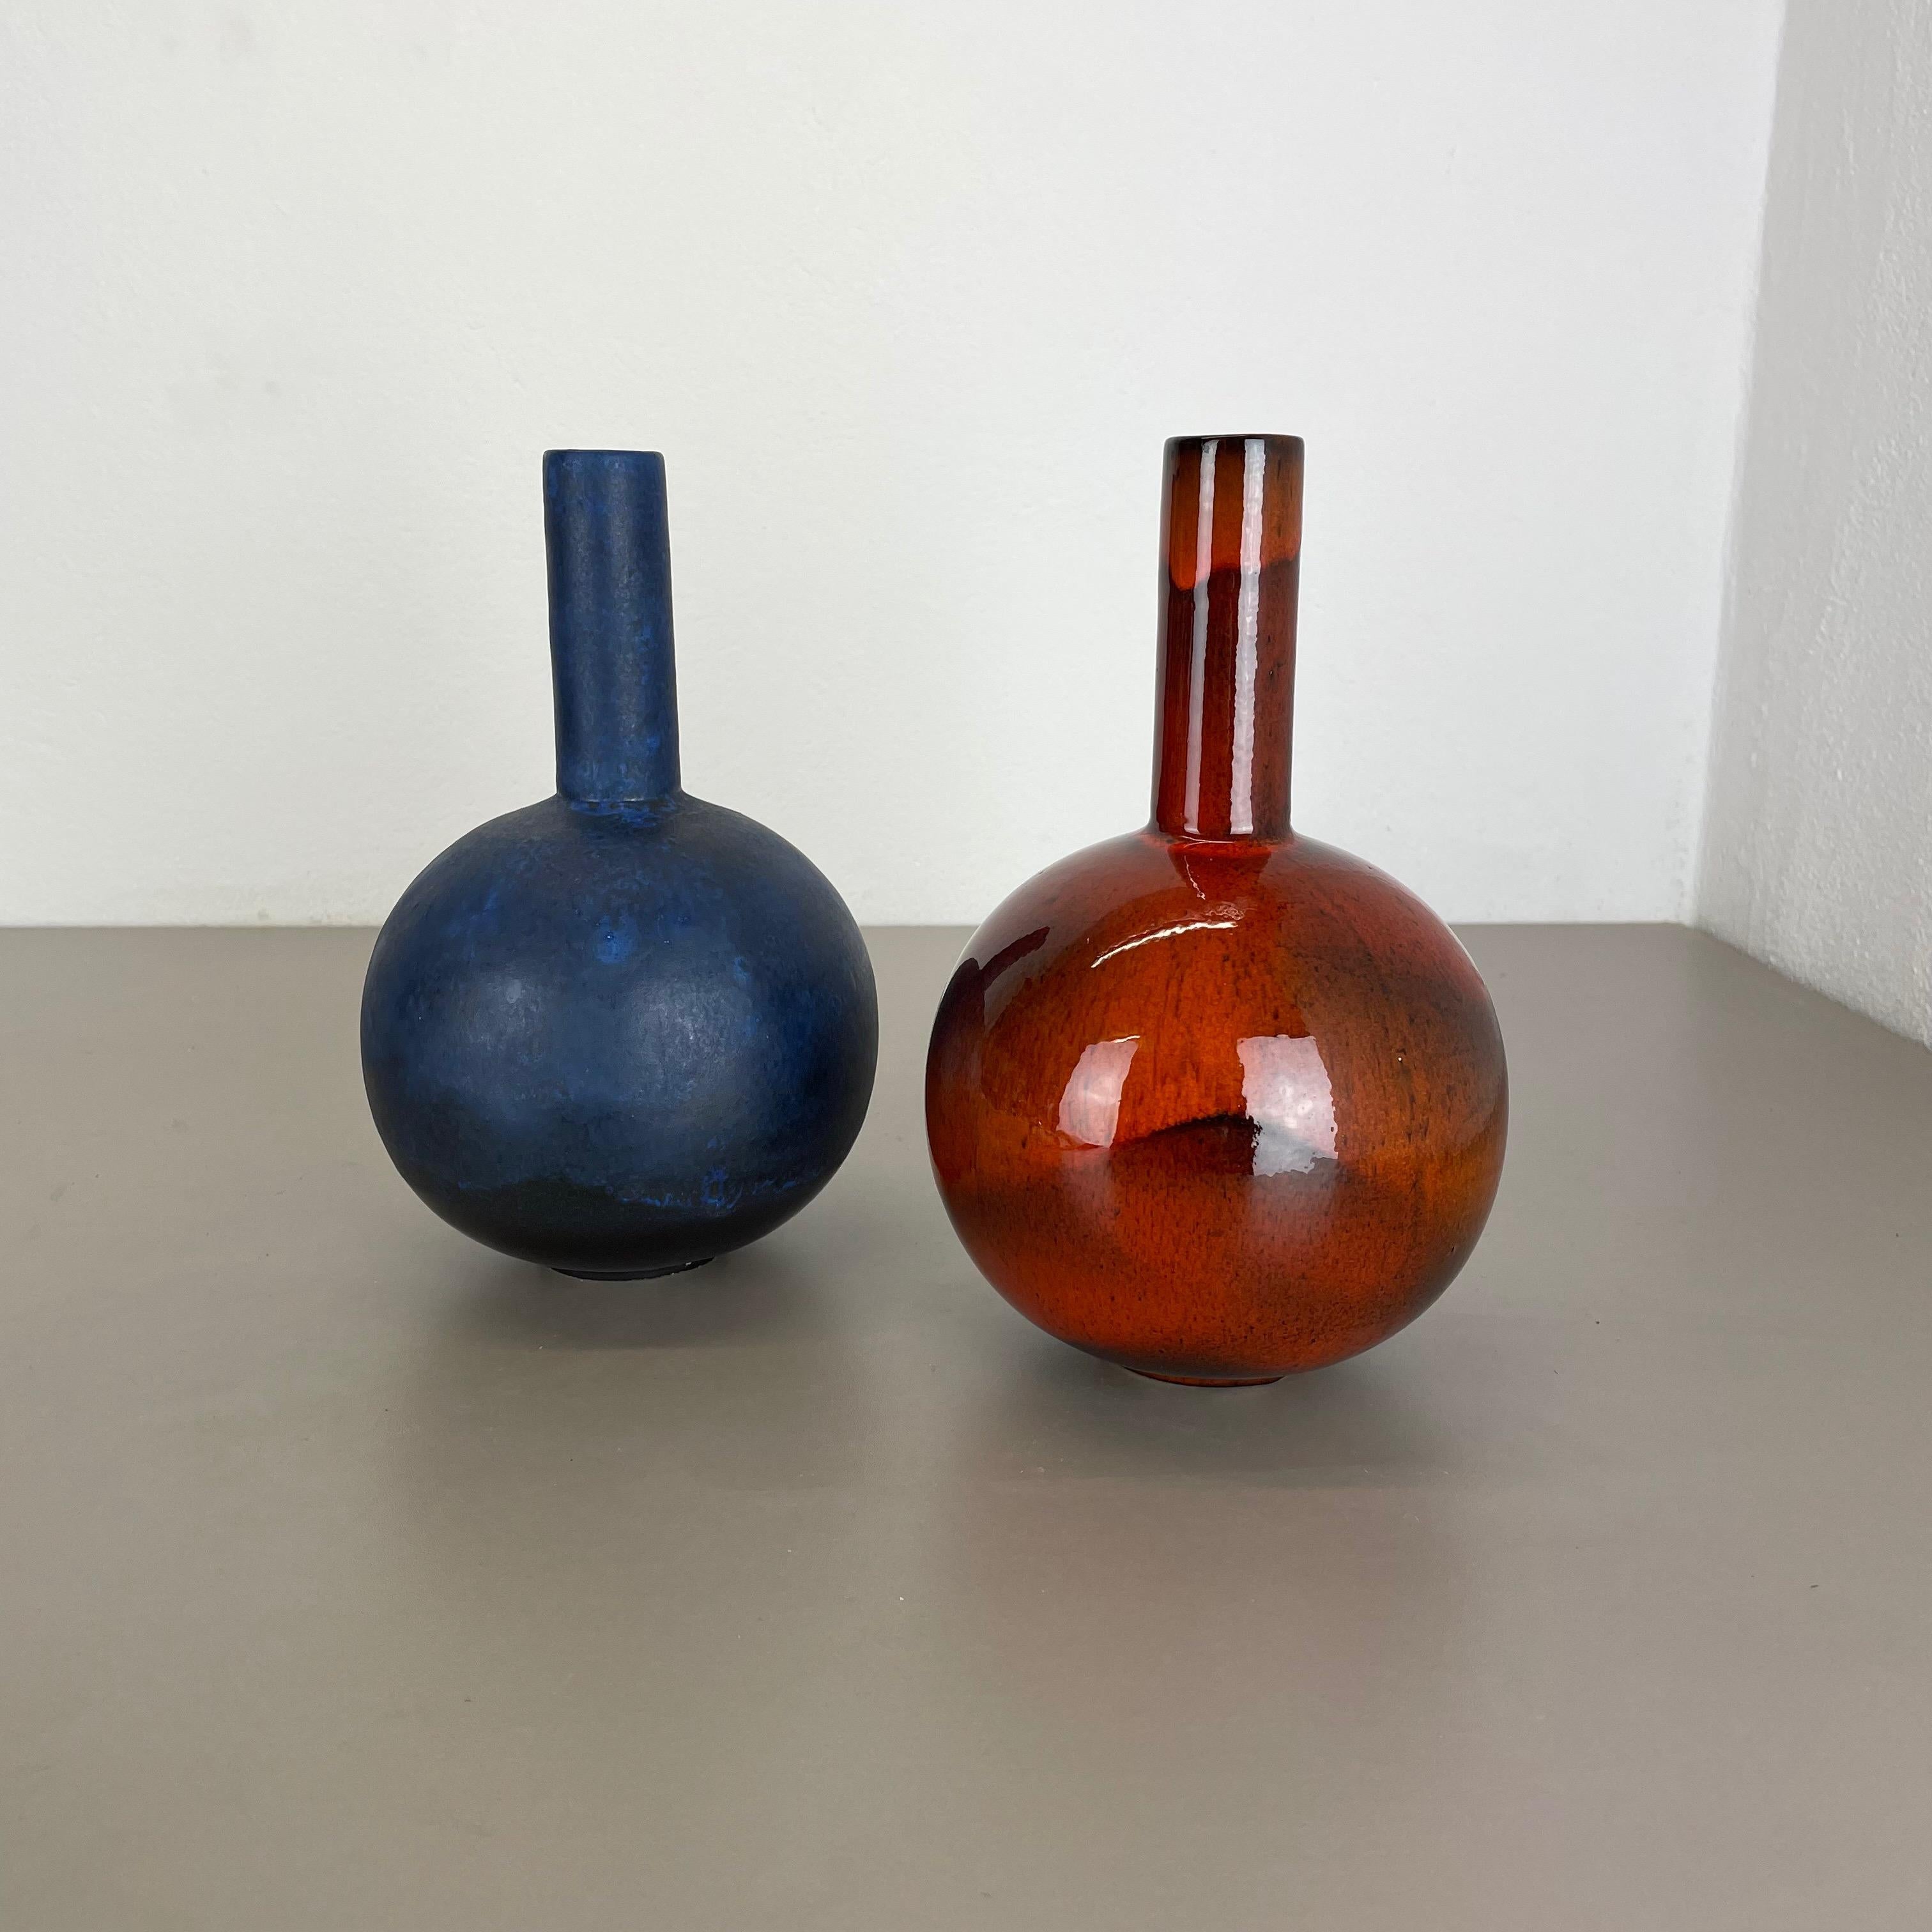 Article :

ensemble de 2 vases


Producteur :

Ruscha, Allemagne



Décennie :

1960s


Description :

Cet ensemble de vases vintage original a été conçu et produit dans les années 1960 par Ruscha en Allemagne. Cette offre contient un ensemble de